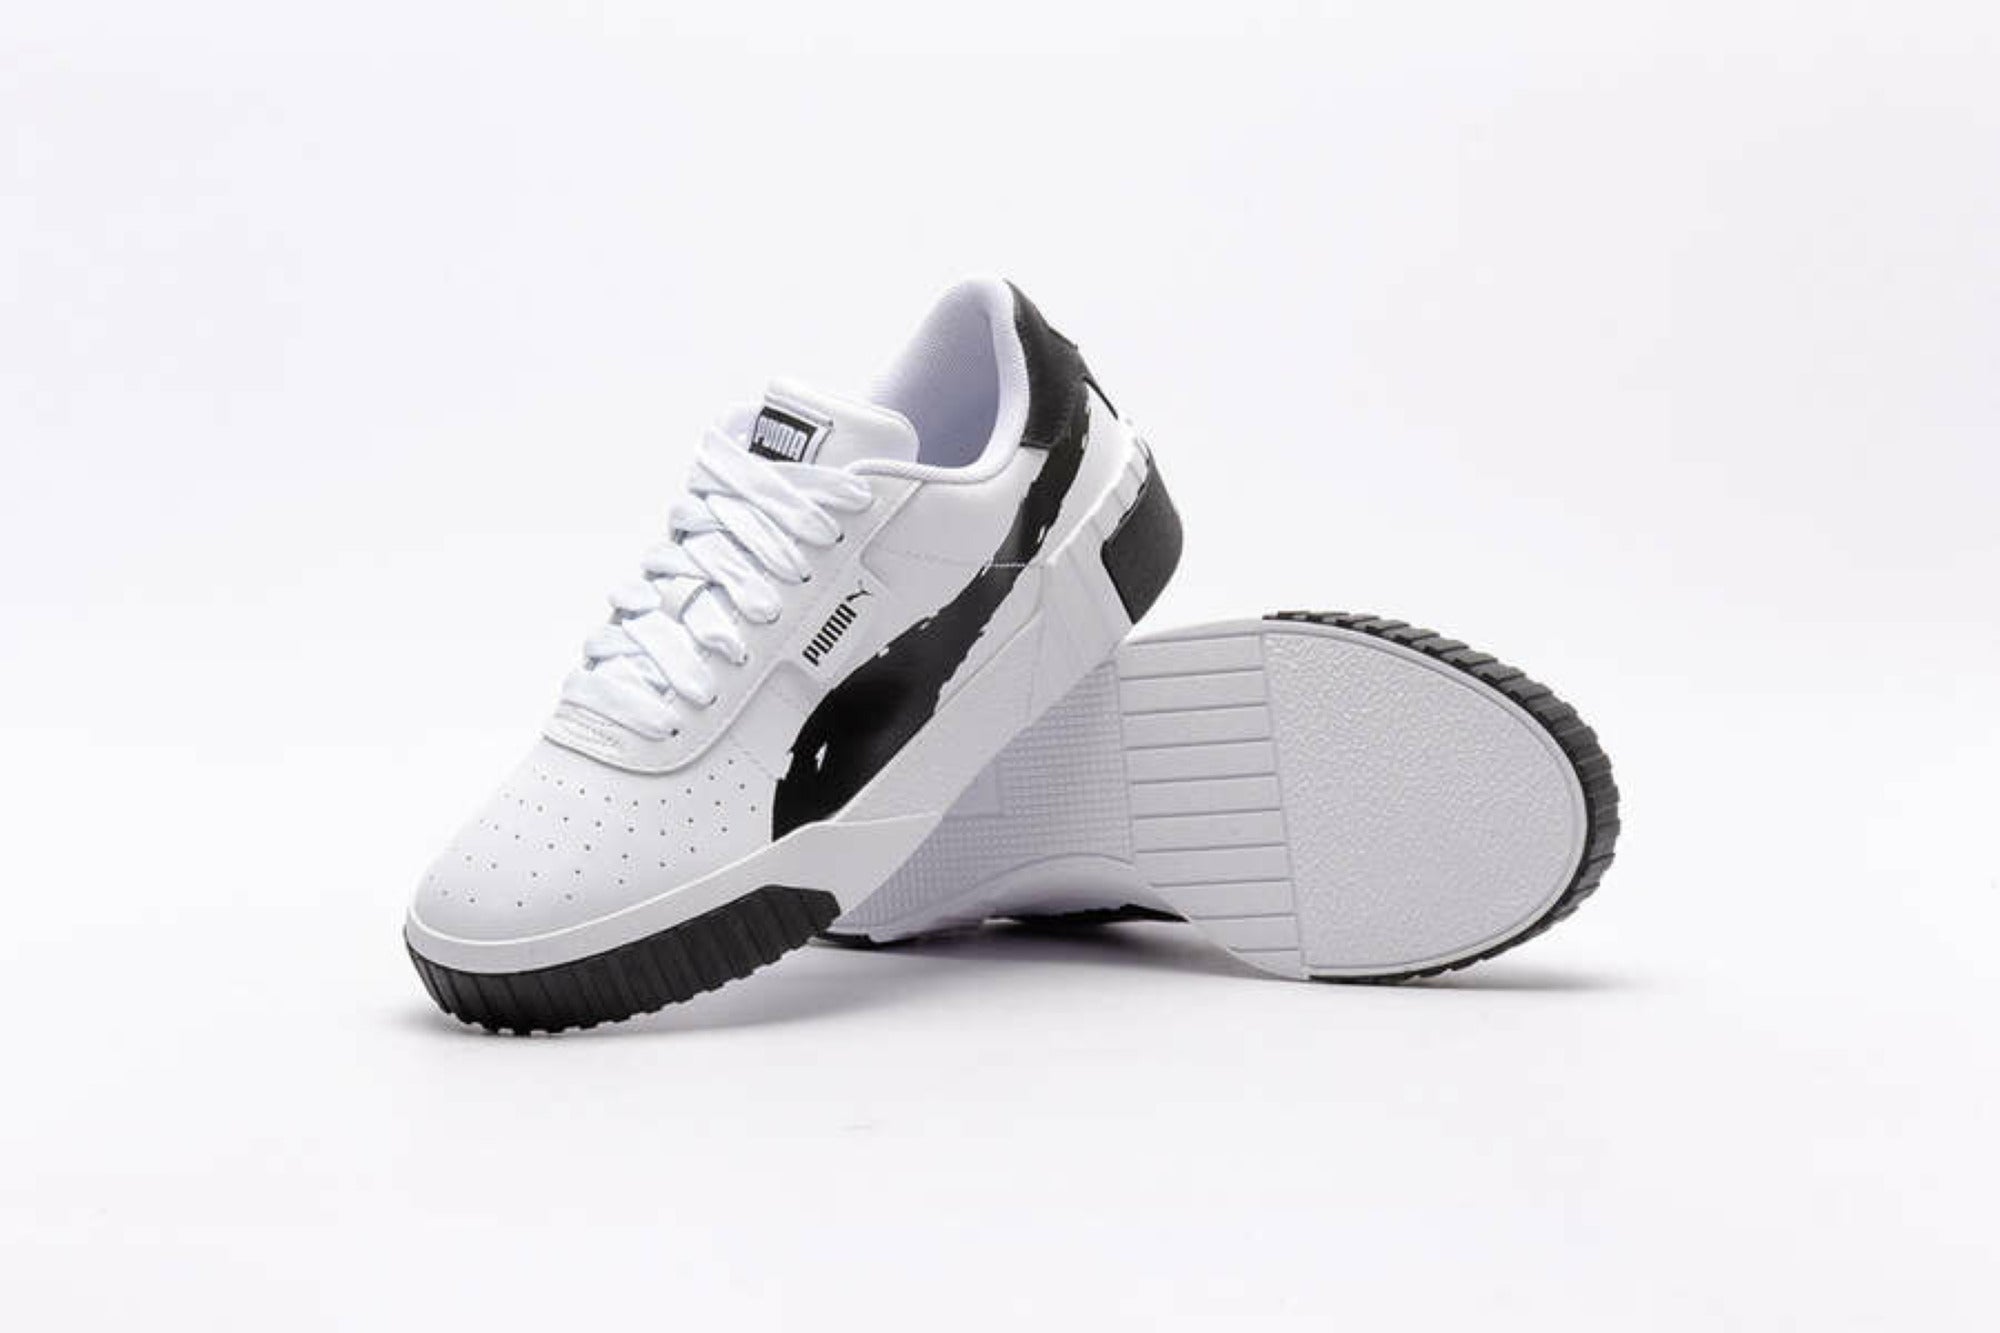 Puma scarpa sneakers da donna Cali Brushed 373896 01 bianco nero